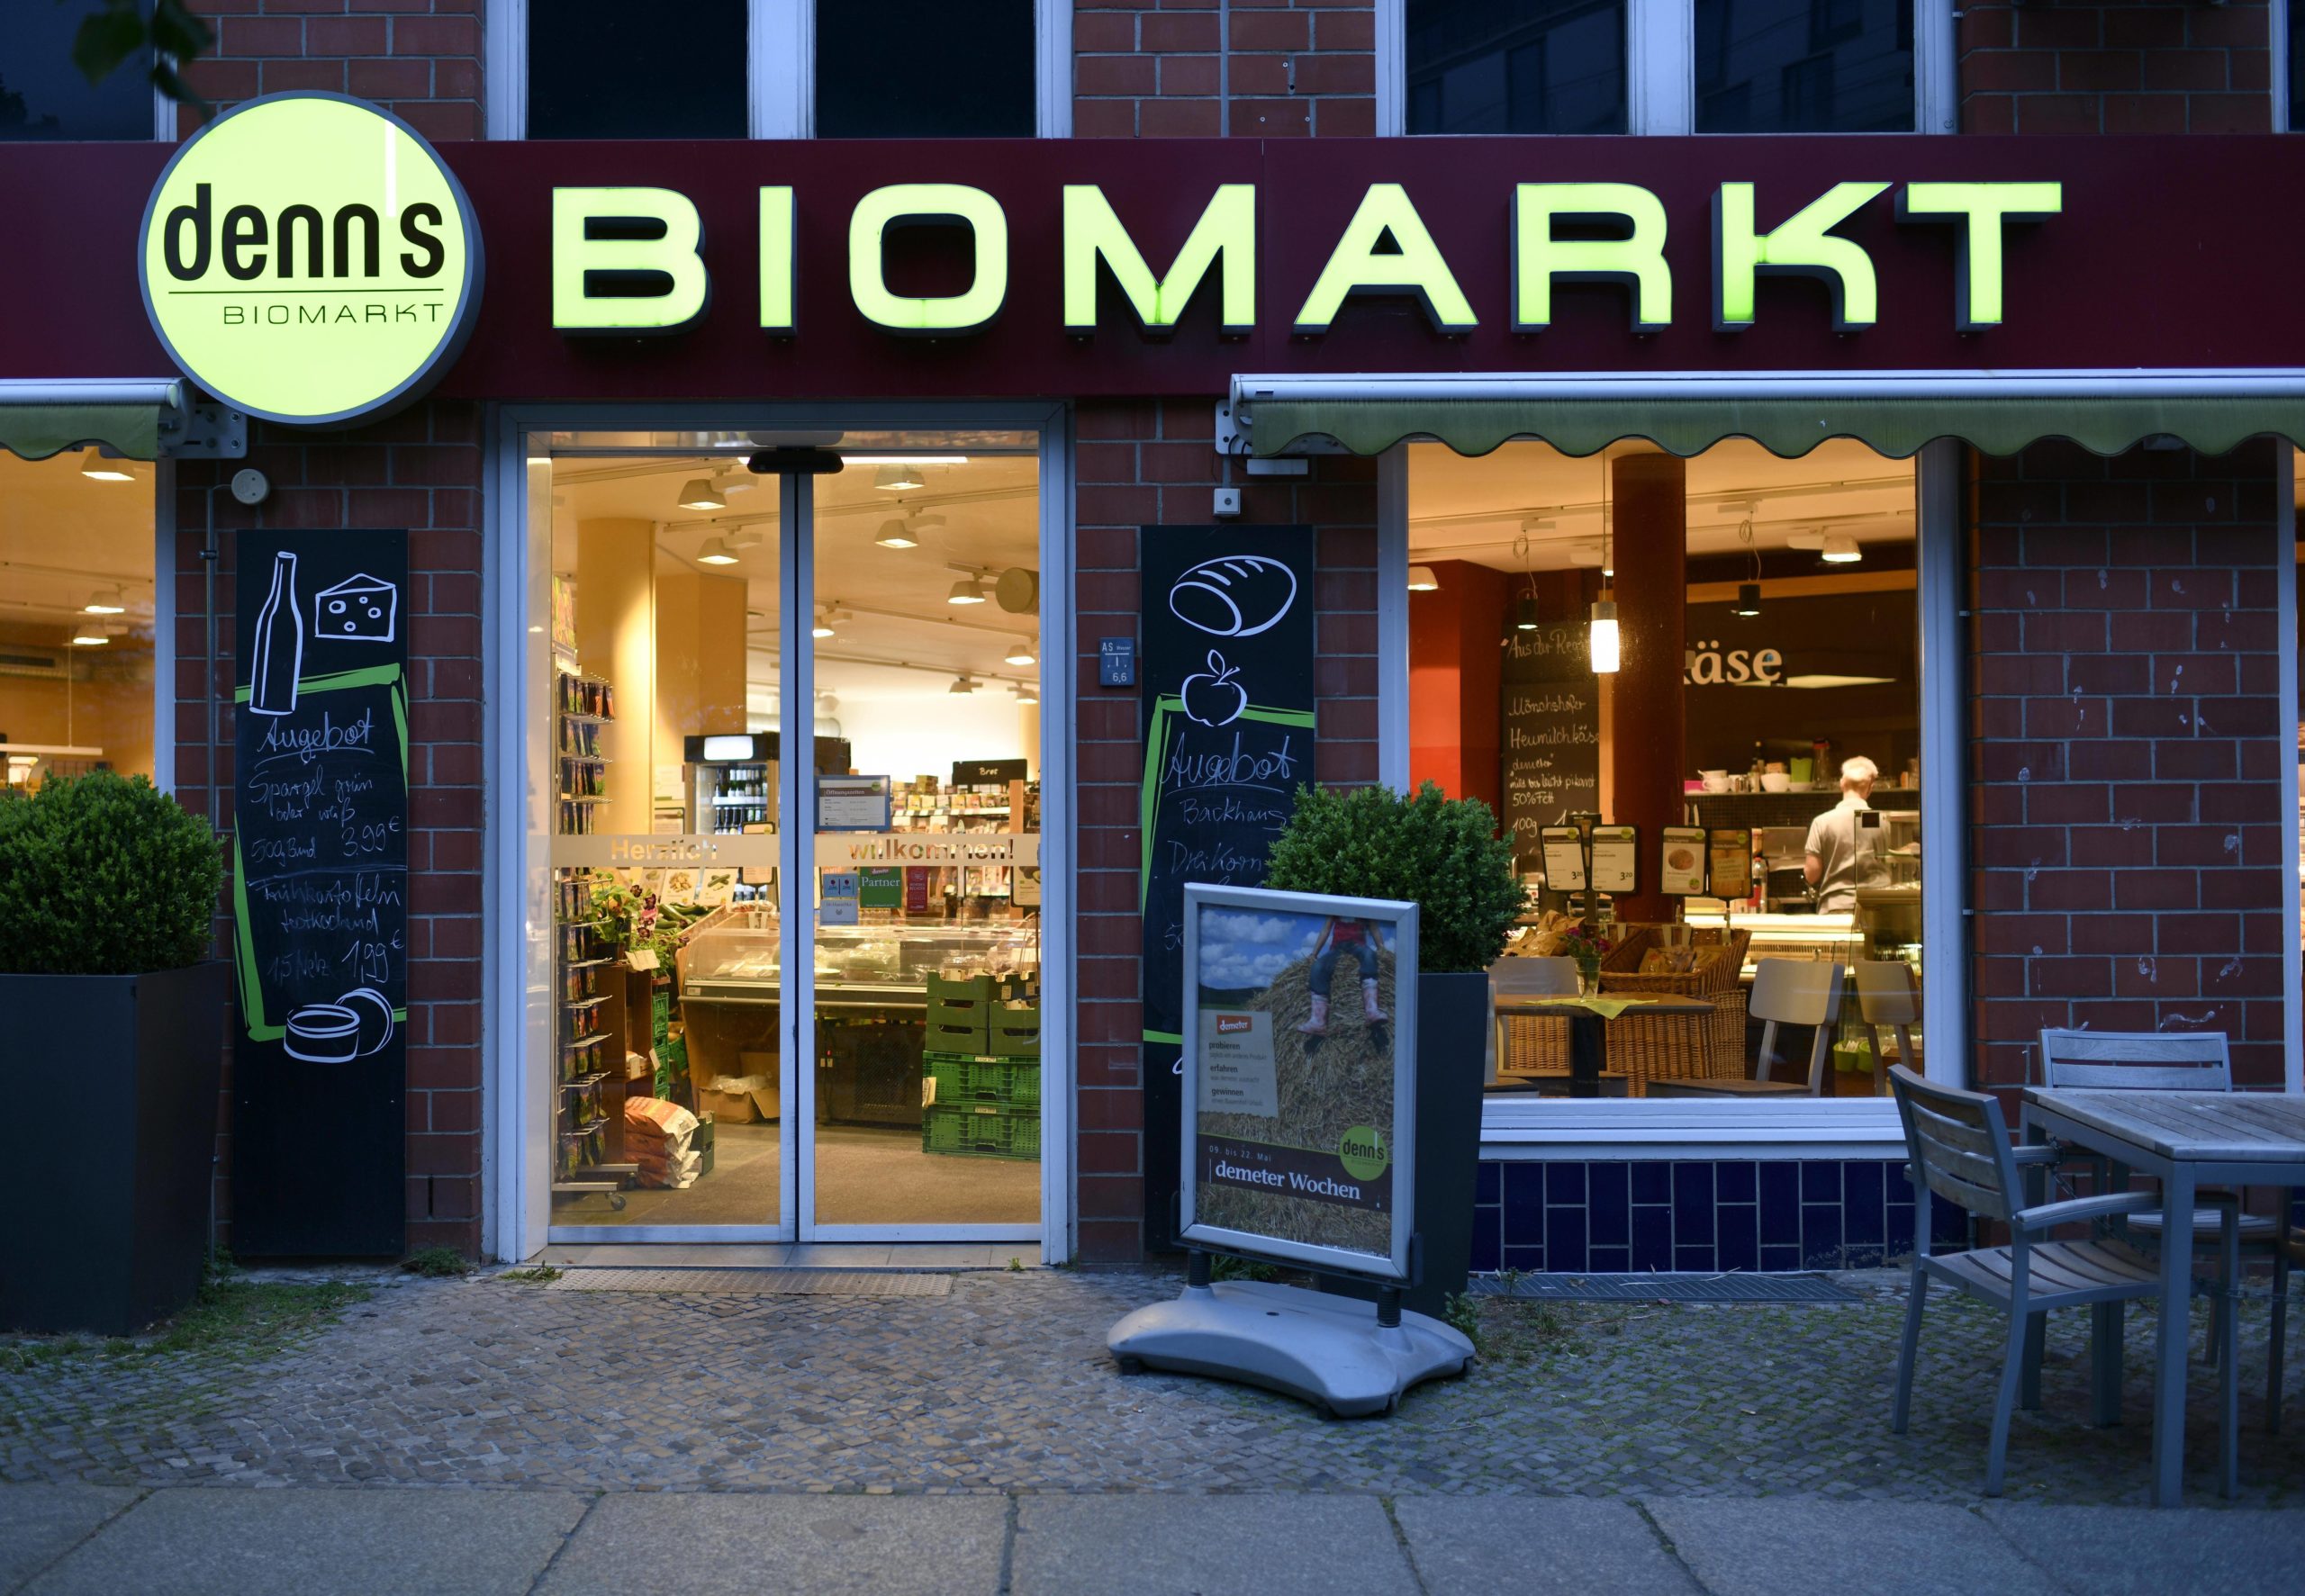 unverpackt einkaufen Berlin Auch der Denn's Biomarkt bietet seinen Kund:innen die Möglichkeit, Grundnahrungsmittel in Mehrwegbehältnisse zu füllen.